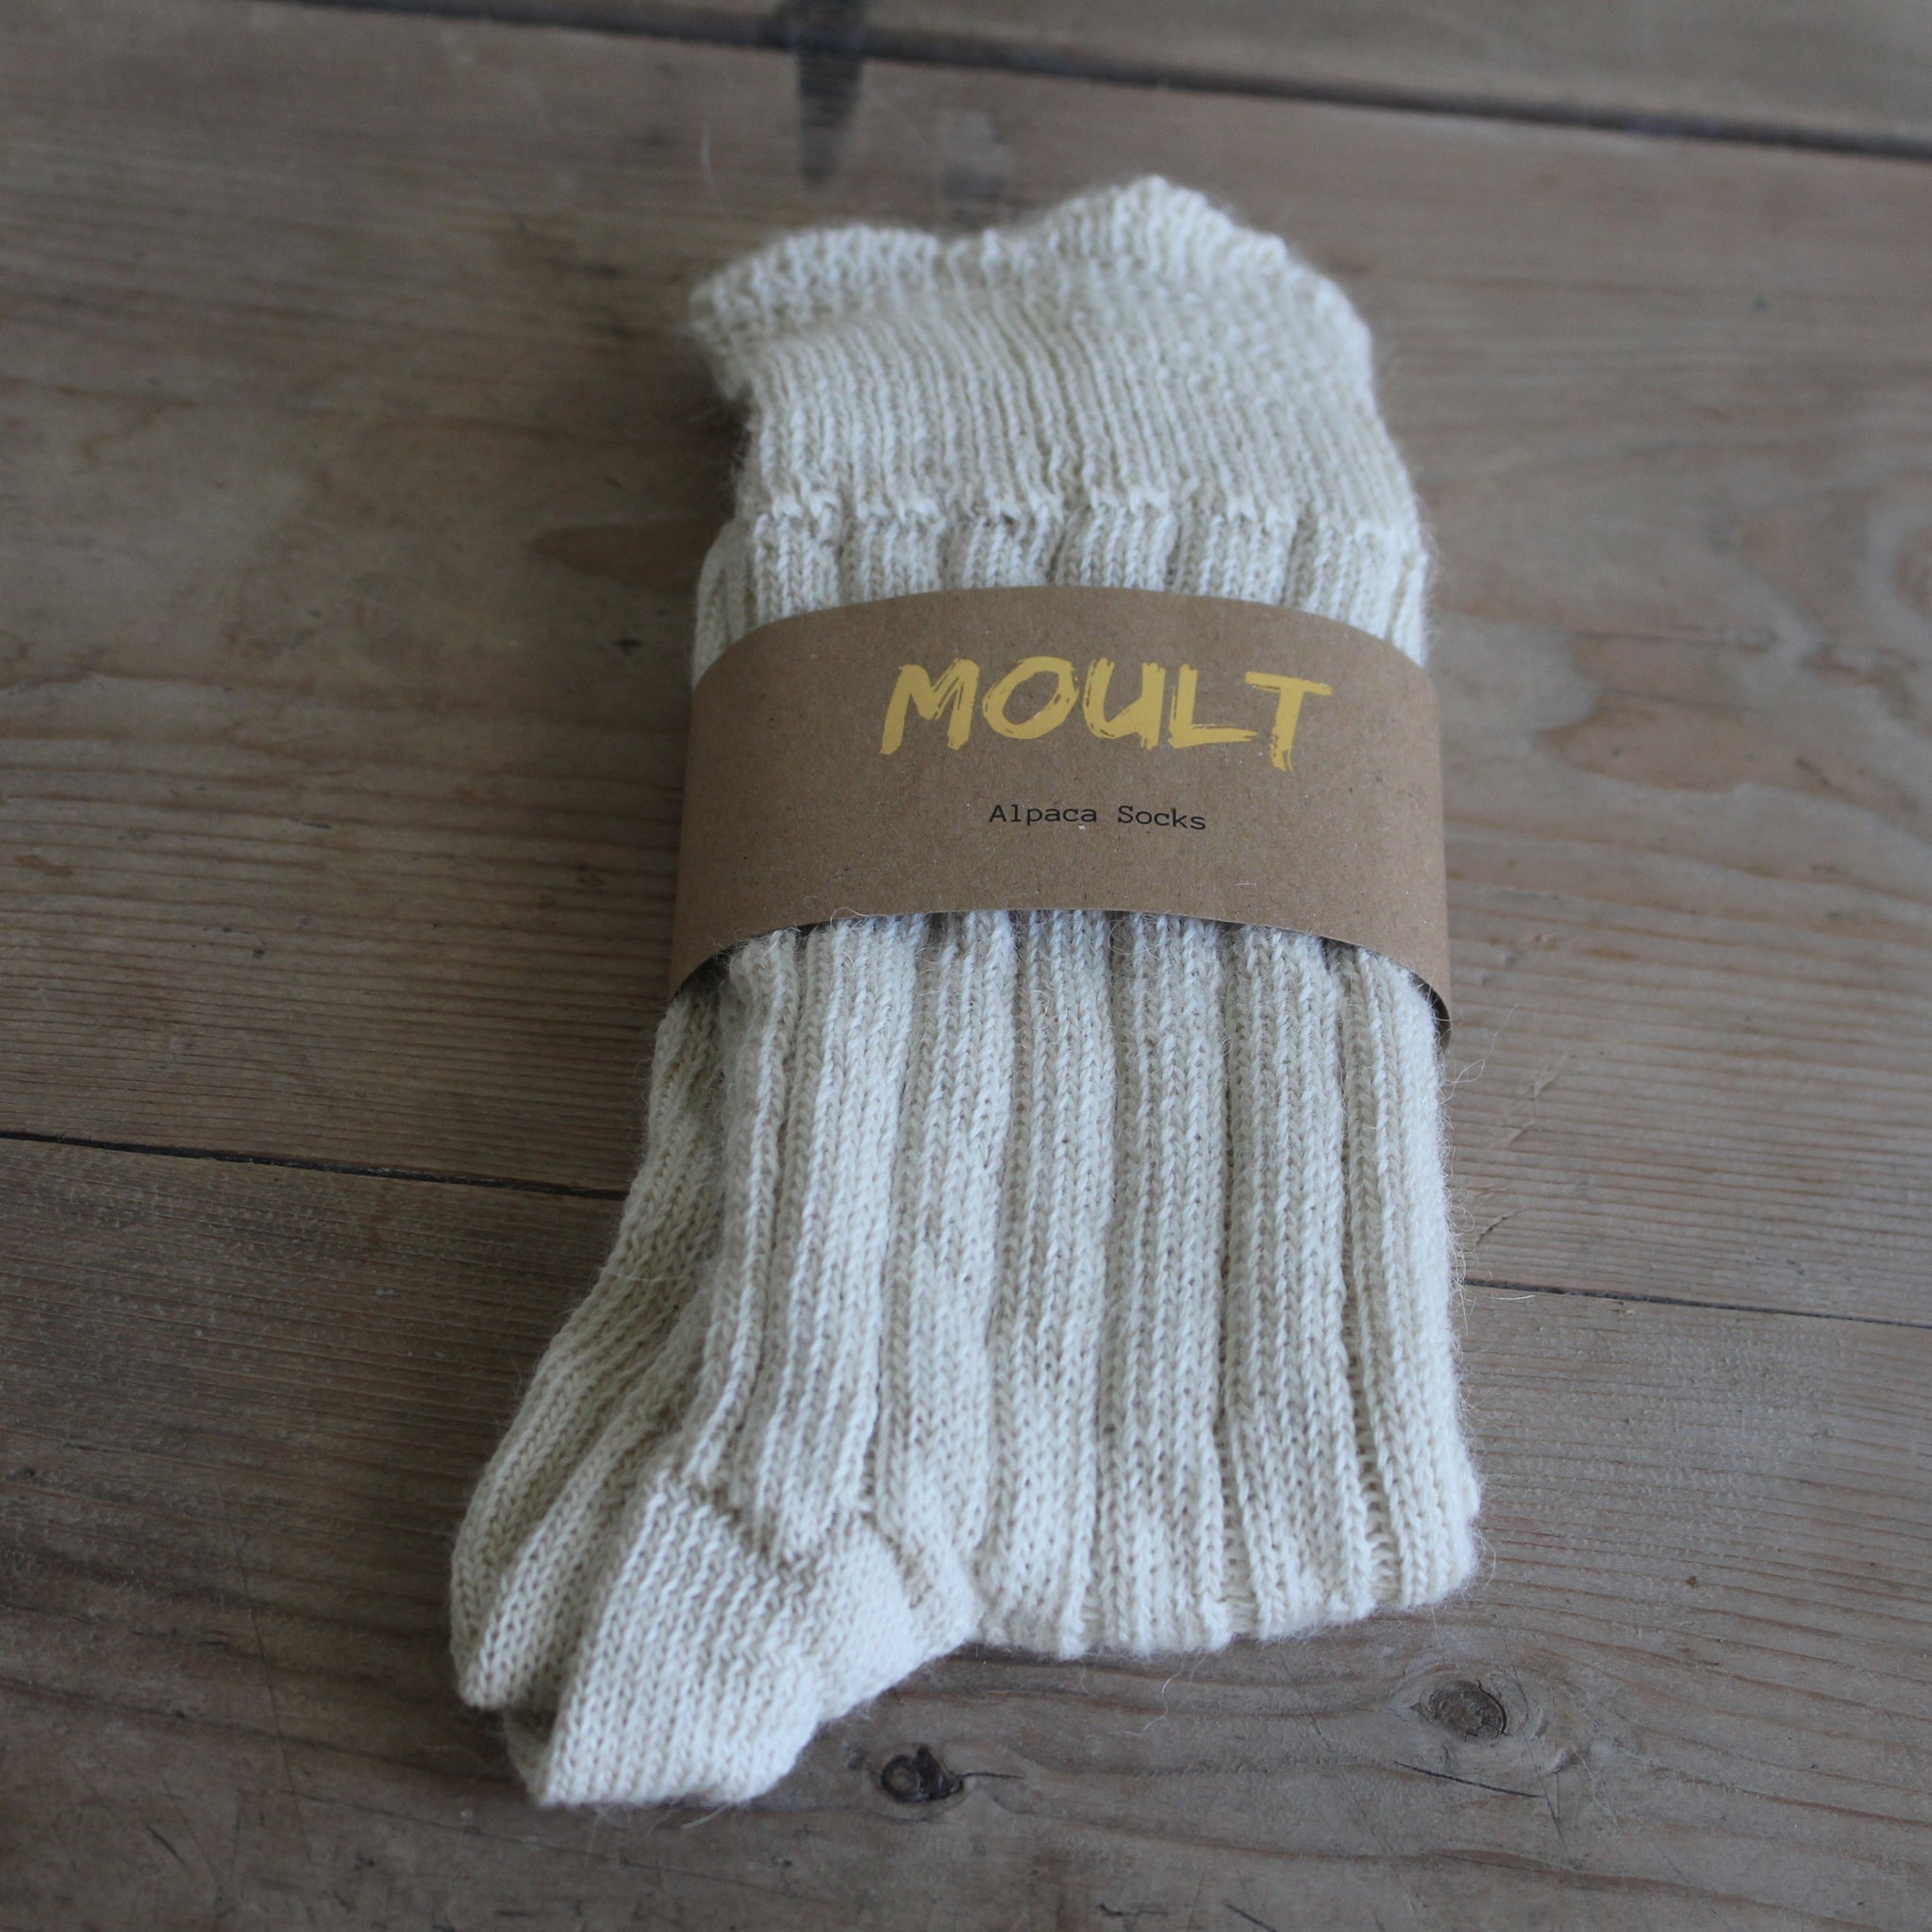 Moult Socks